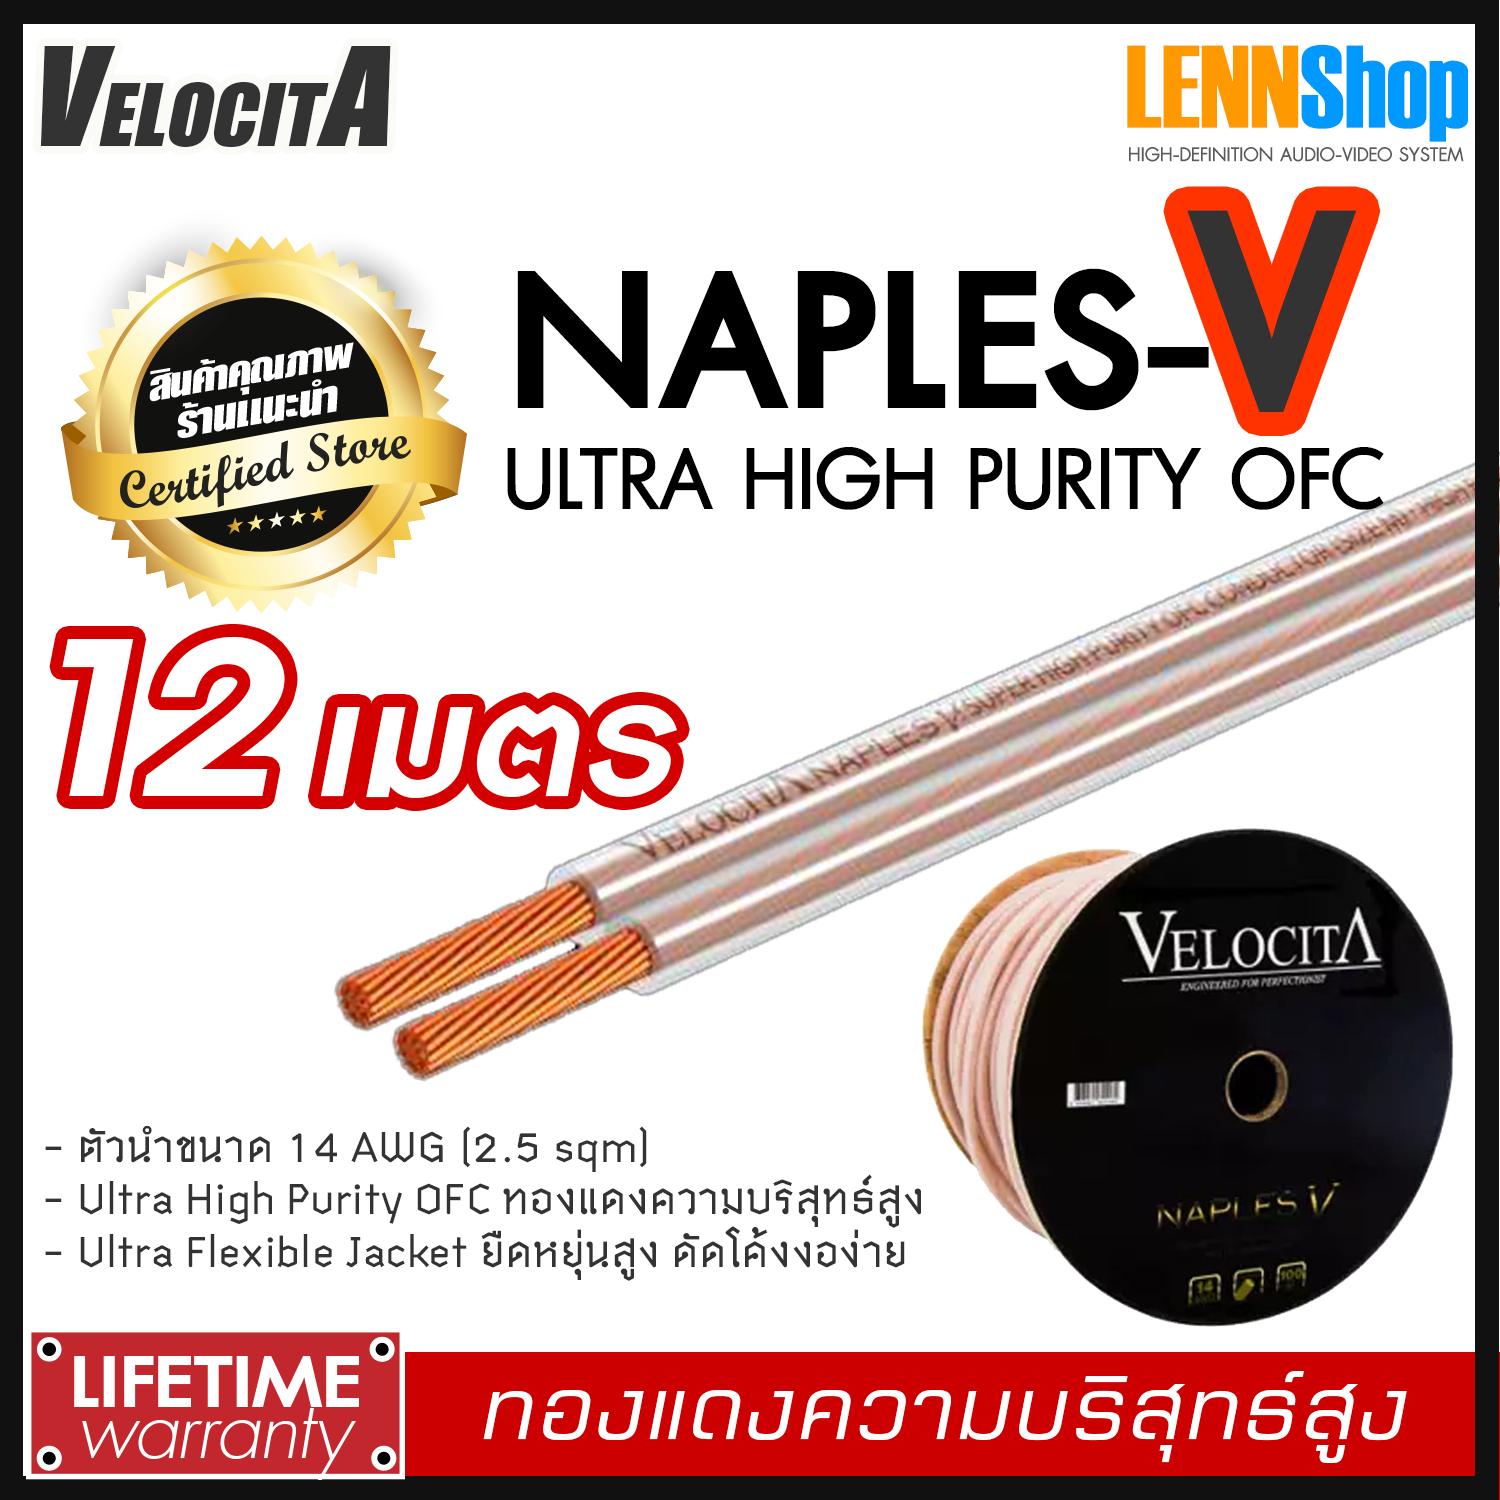 VELOCITA : NAPLES V สายลำโพง Ultra High Purity OFC ความบริสุทธ์สูง ความยาว ตั้งแต่ 1 - 100 เมตร เลือกได้หลายขนาด สินค้าของแท้ 100% จากตัวแทนจำหน่ายอย่างเป็นทางการ จำหน่ายโดย LENNSHOP / Velocita Naple V / naple V สี 12m สี 12m